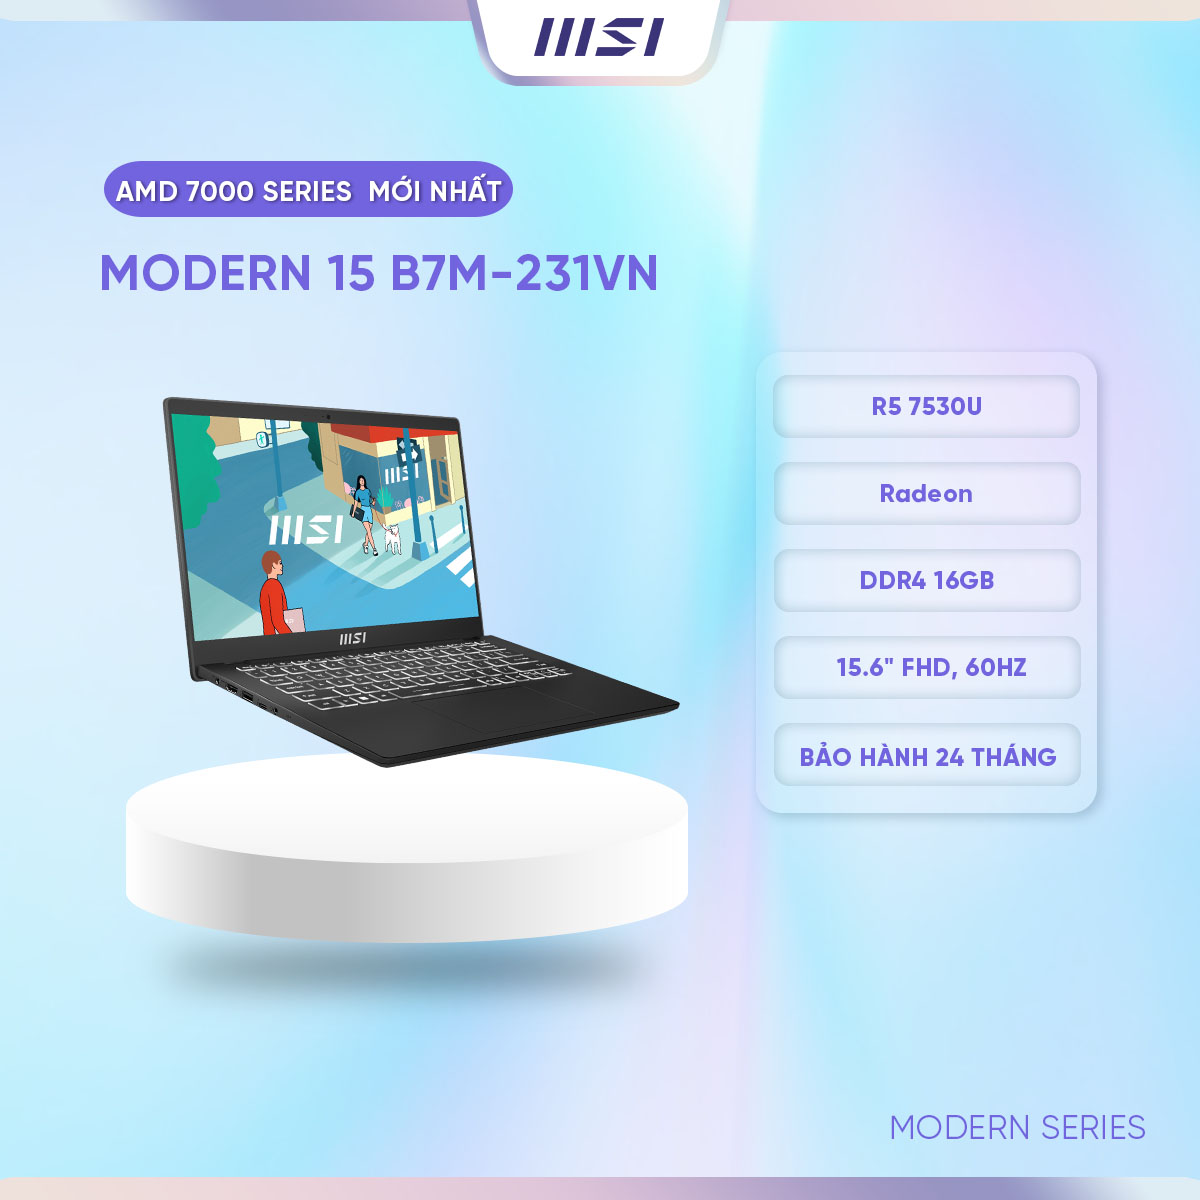 MSI Laptop Văn phòng Modern 15 B7M-231VN|R5 7530U|Radeon|DDR4 16GB|512GB SSD|15.6&quot; FHD, 60Hz [Hàng chính hãng]